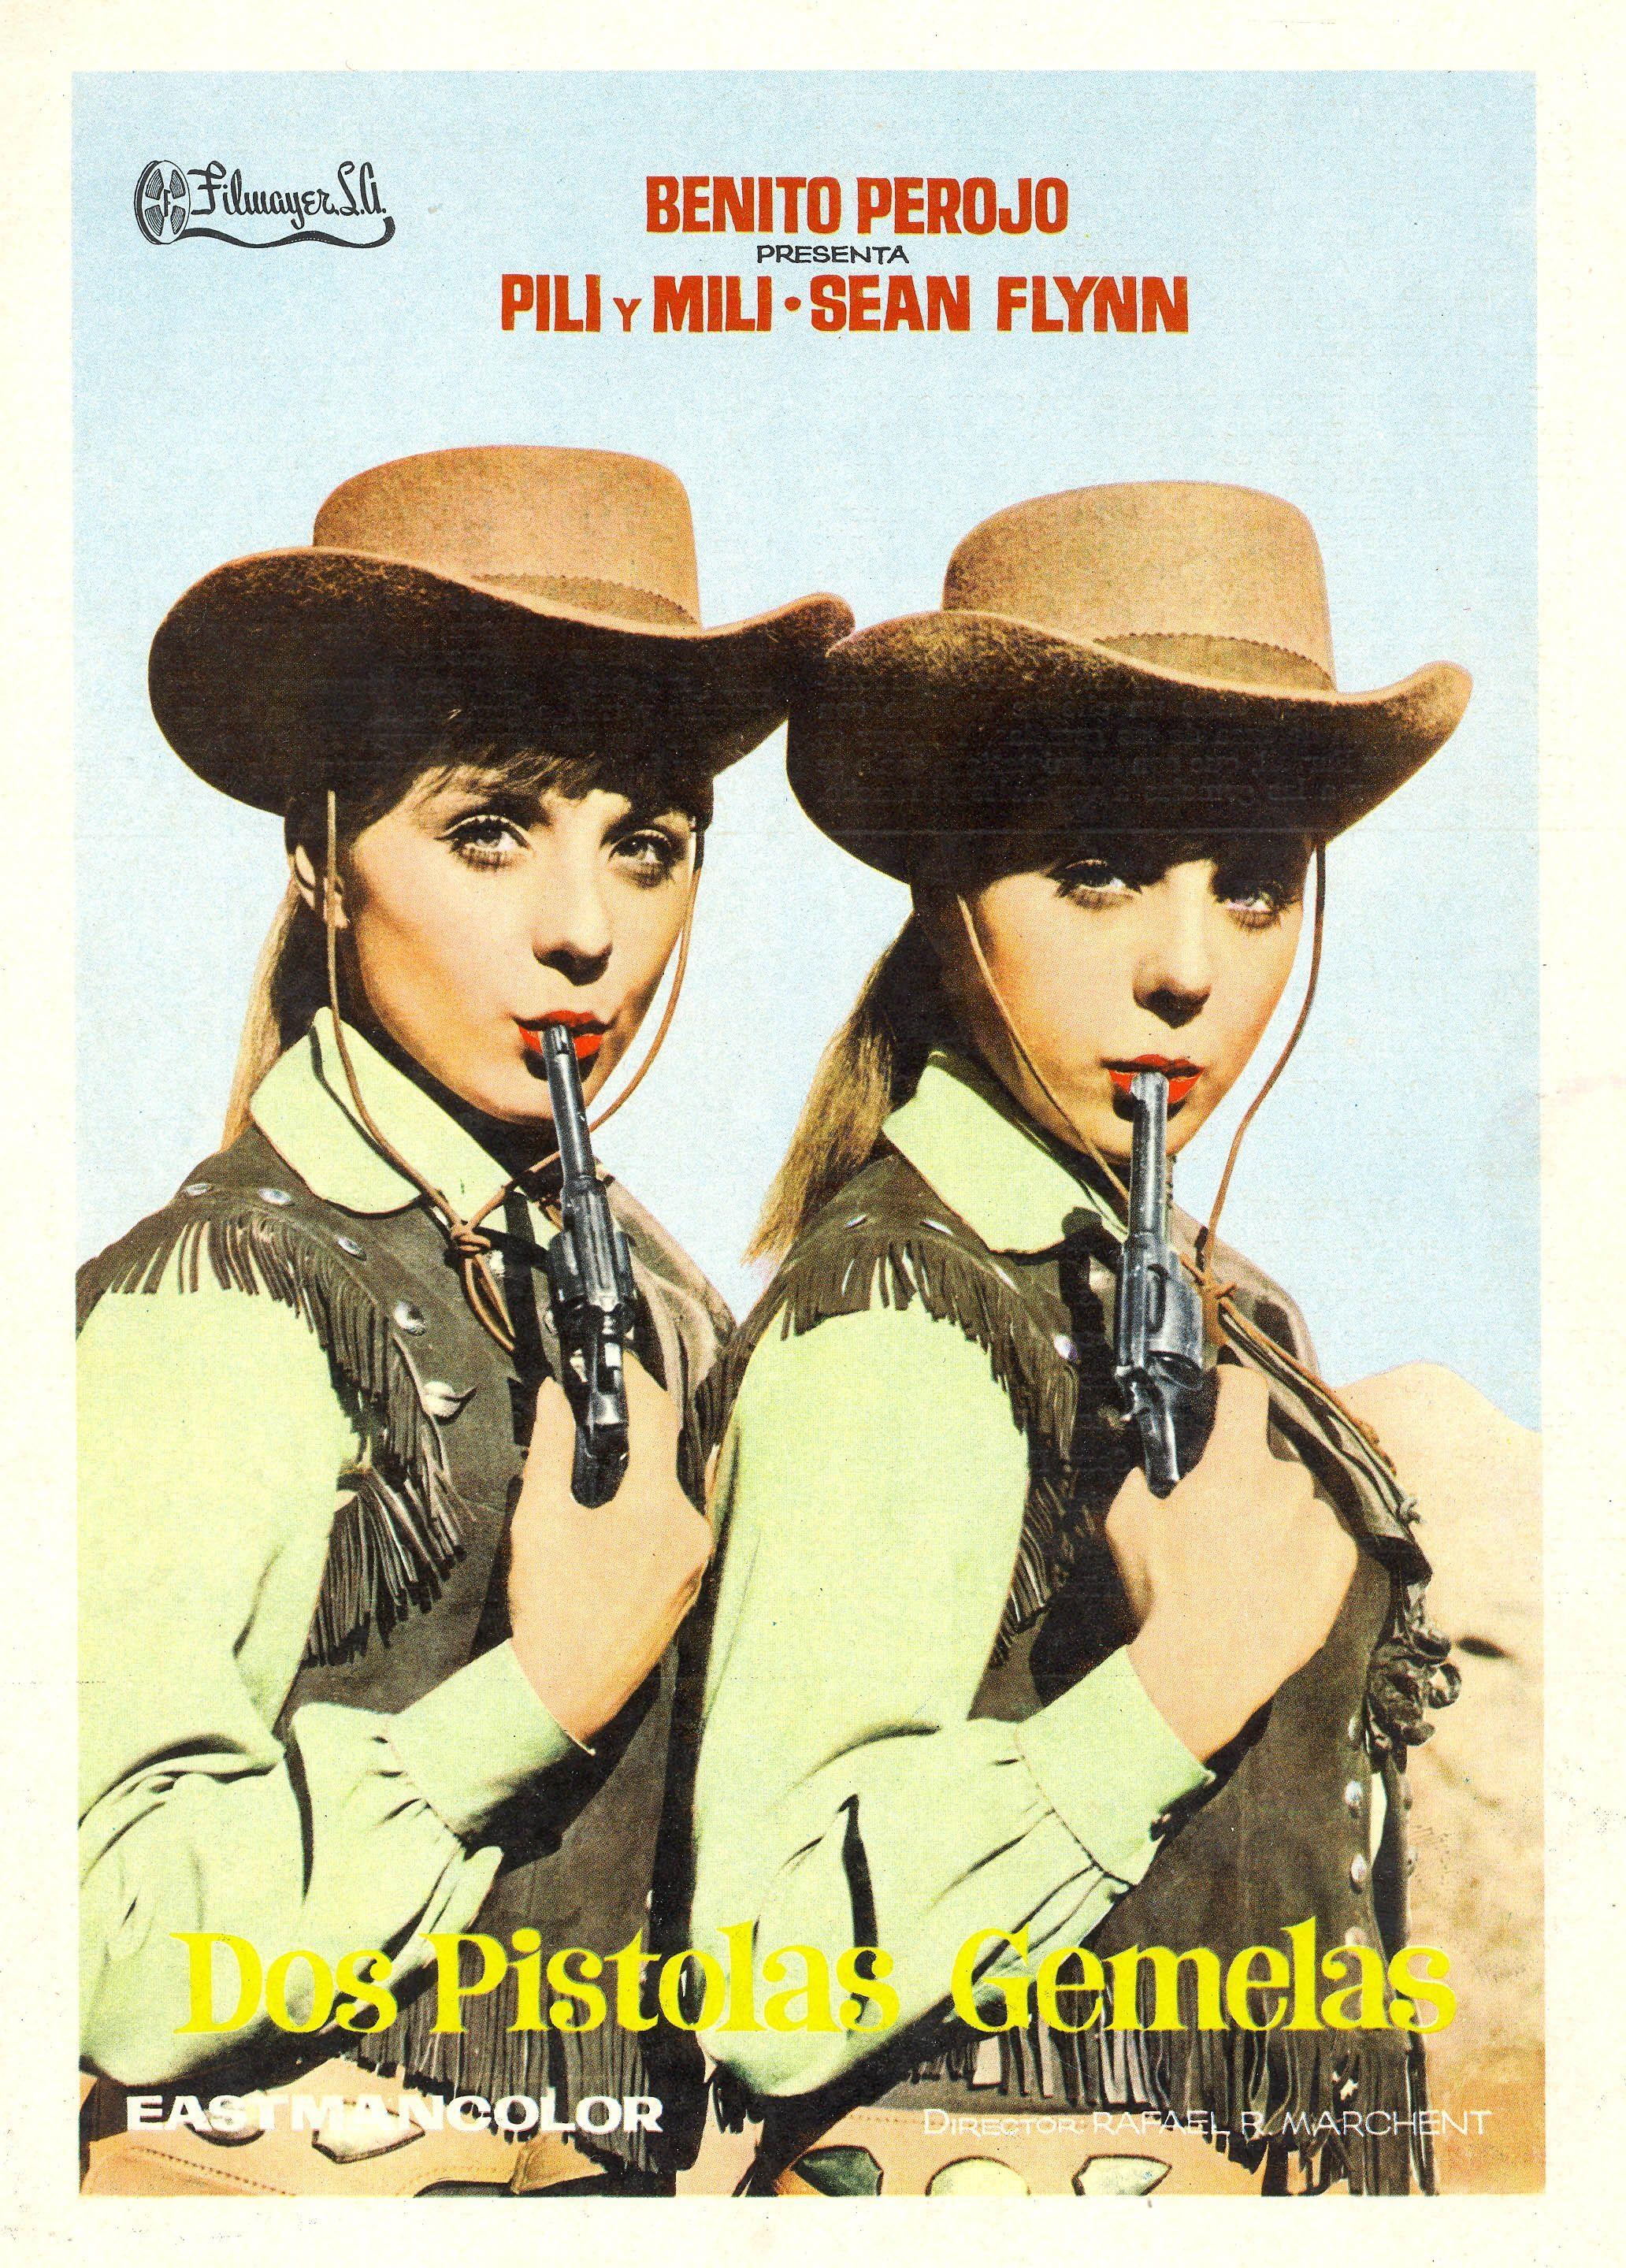 Постер фильма Dos pistolas gemelas